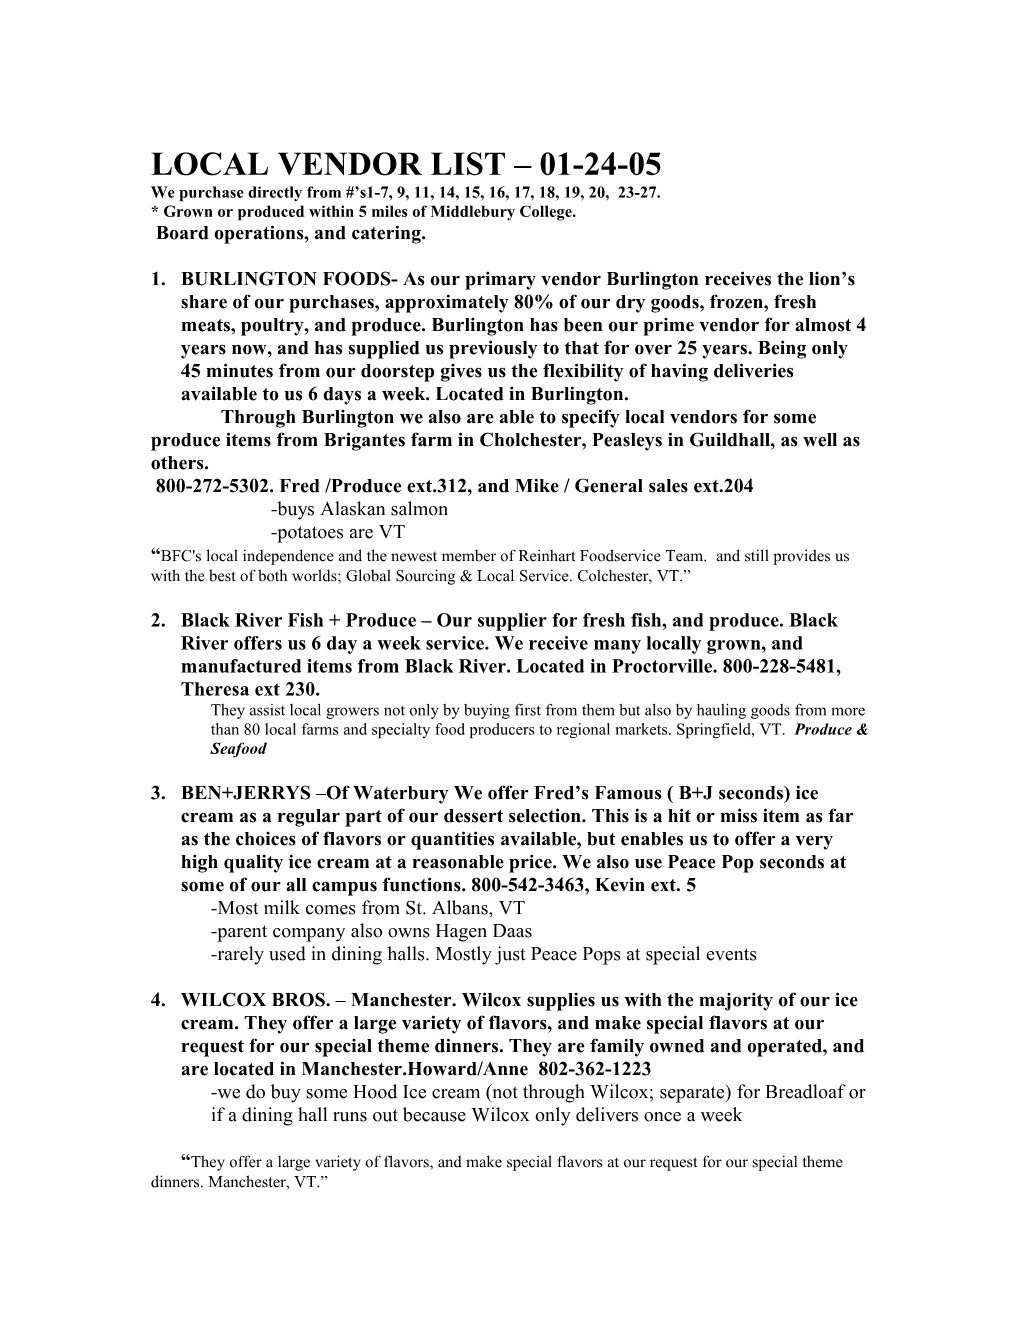 Local Vendor List As of 1/4/ 00